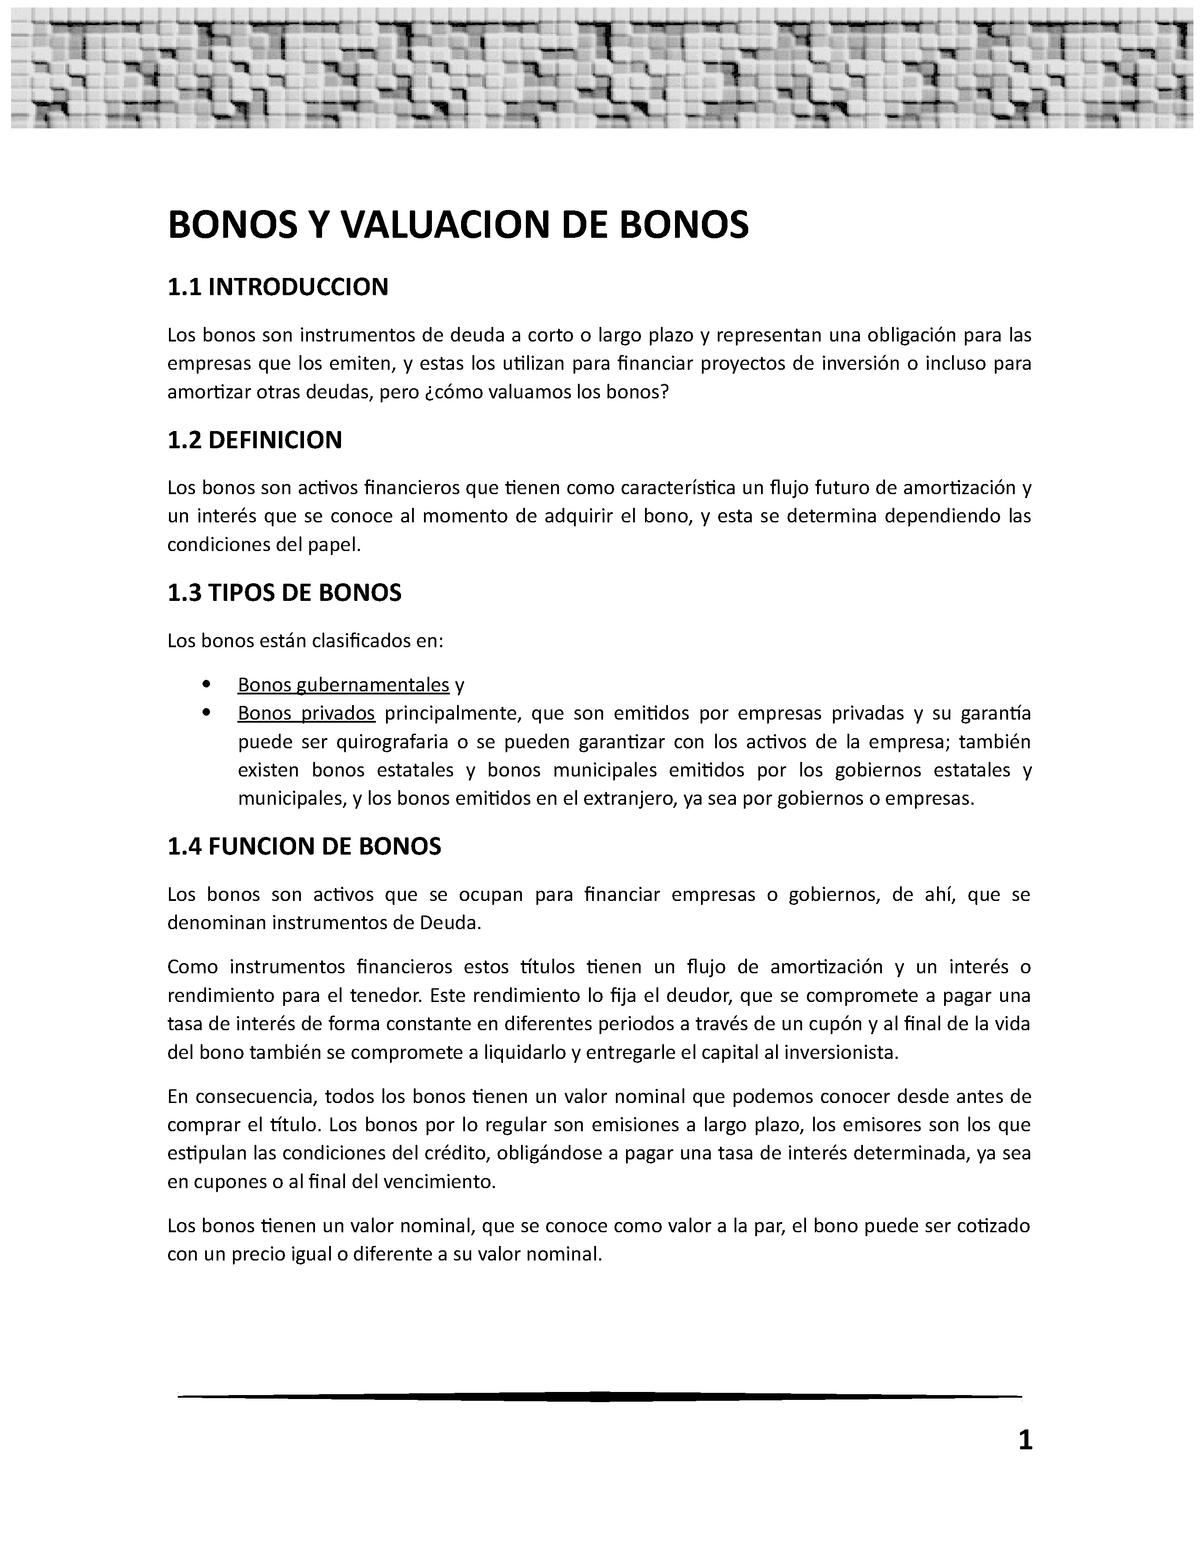 bonos-y-valuaci-n-de-bonos-bonos-y-valuacion-de-bonos-1-introduccion